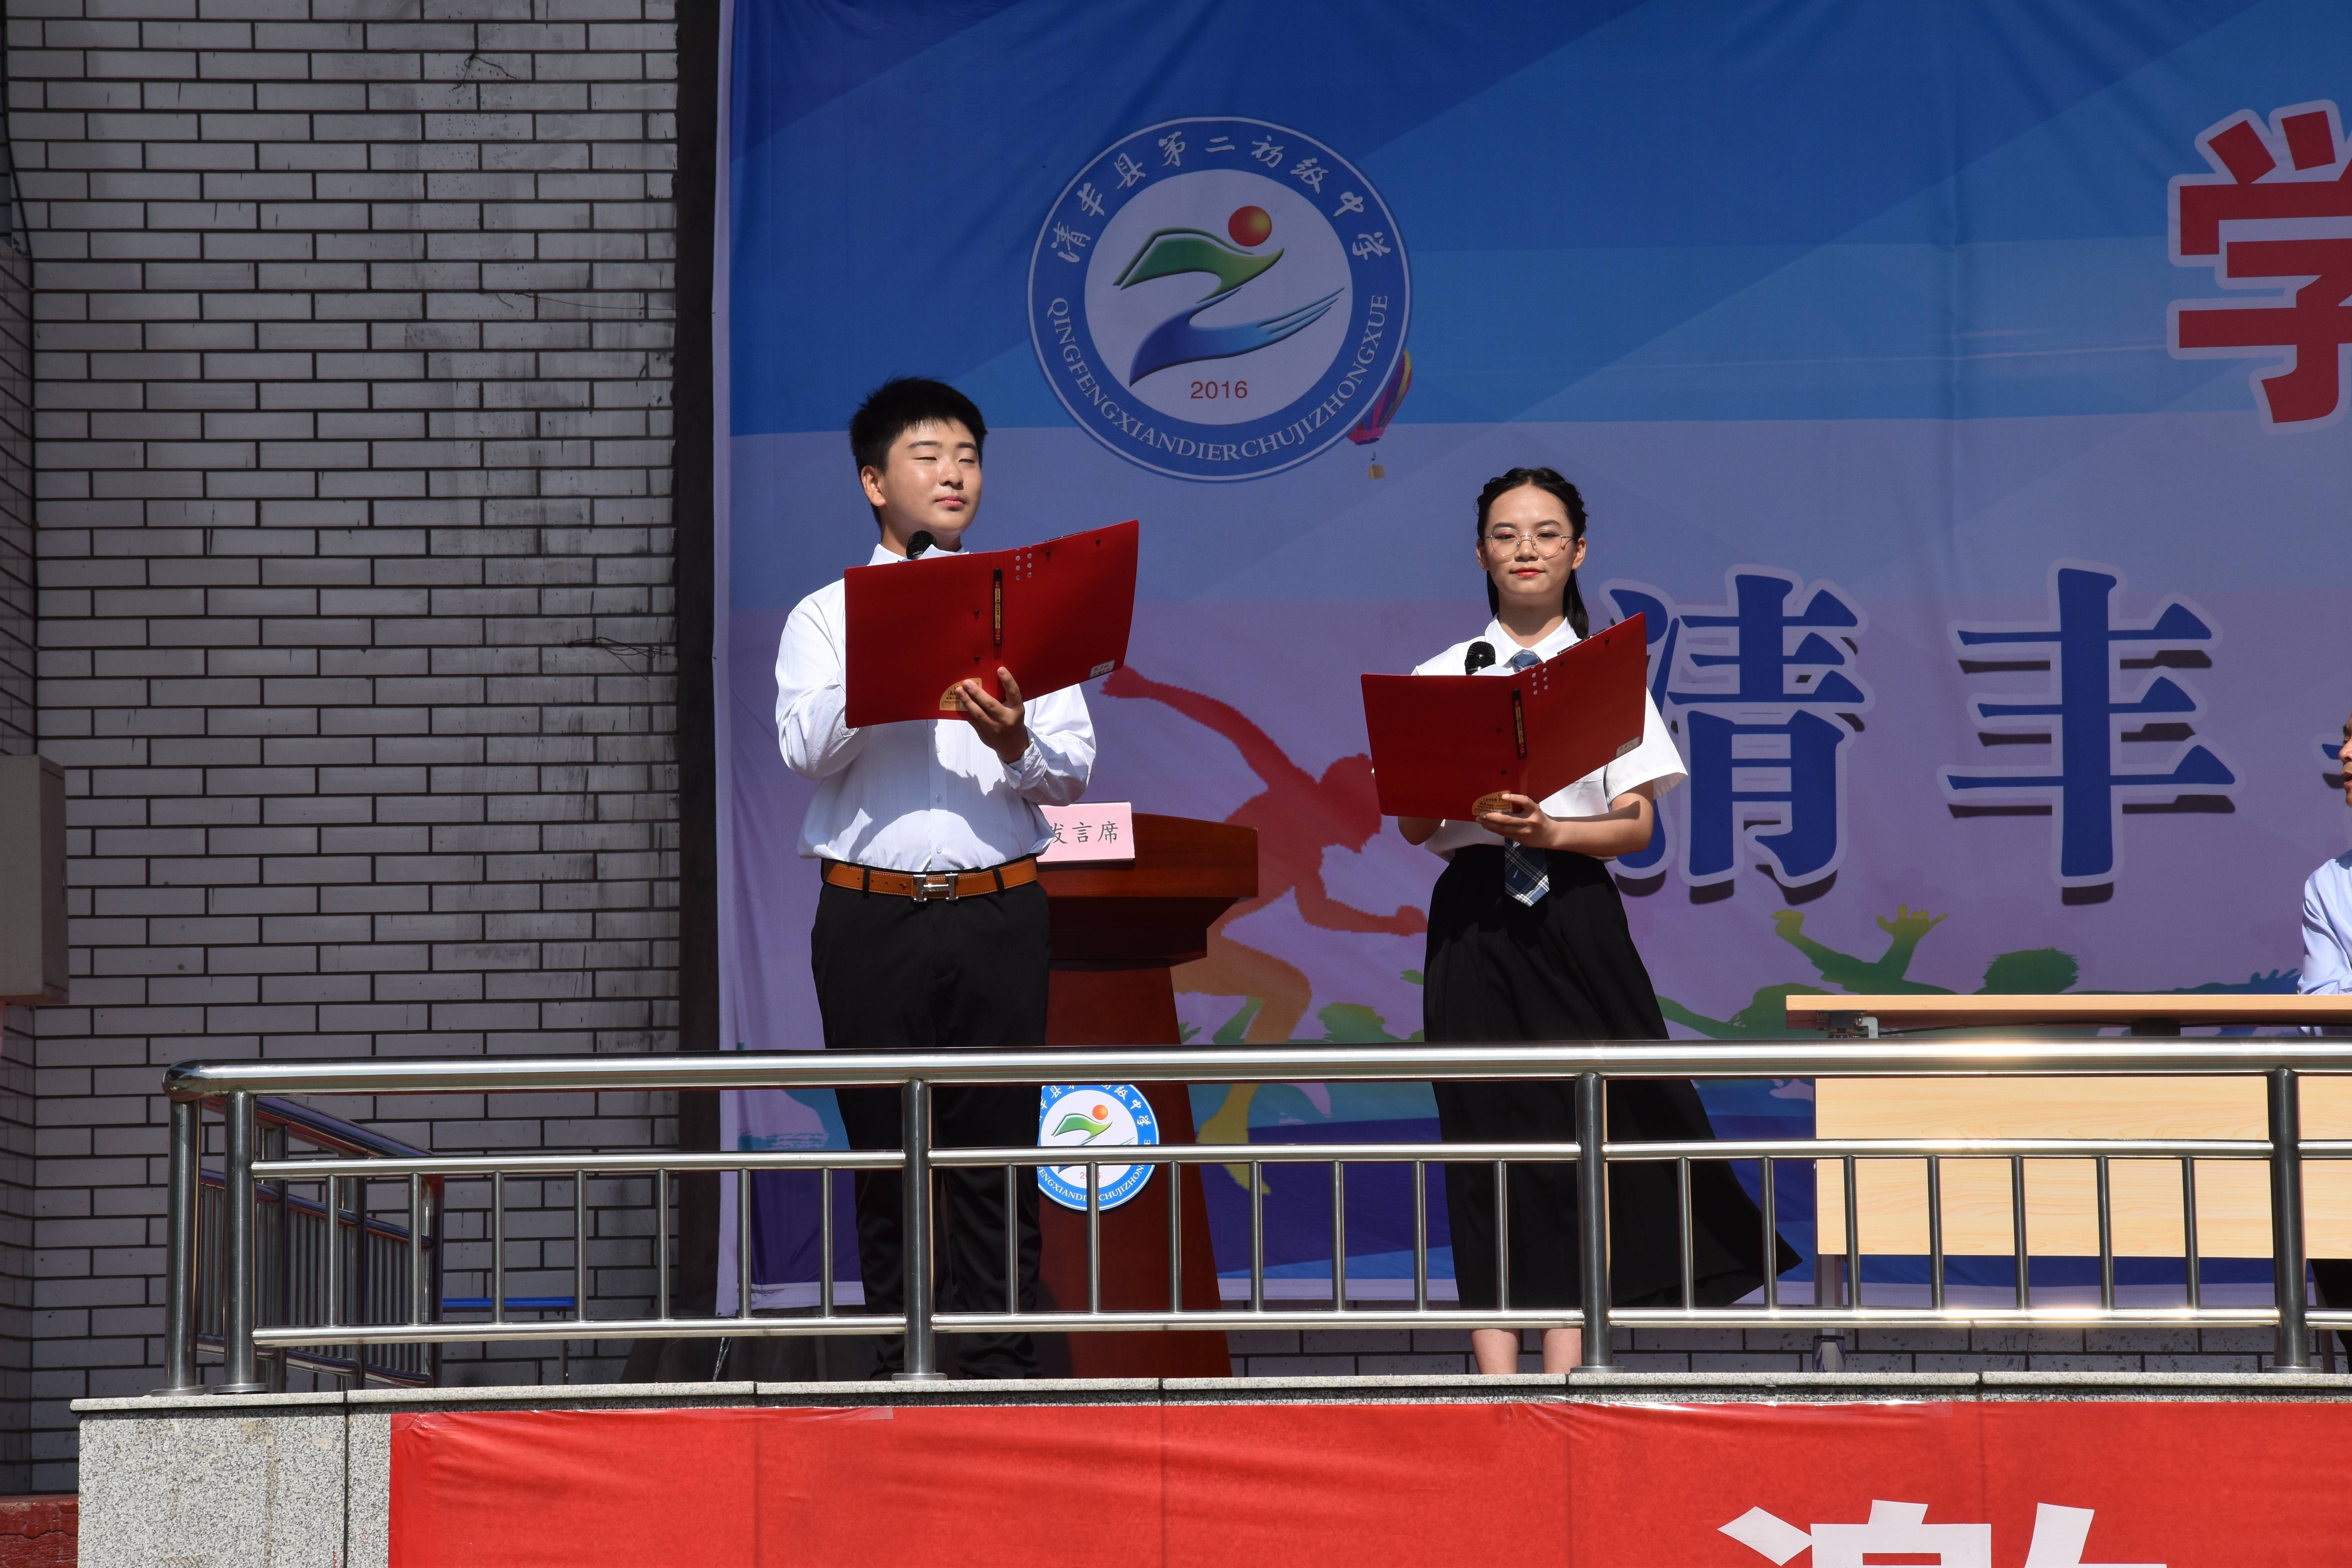 红心向党庆百年强身健体展风采清丰县第二初级中学第一届田径运动会